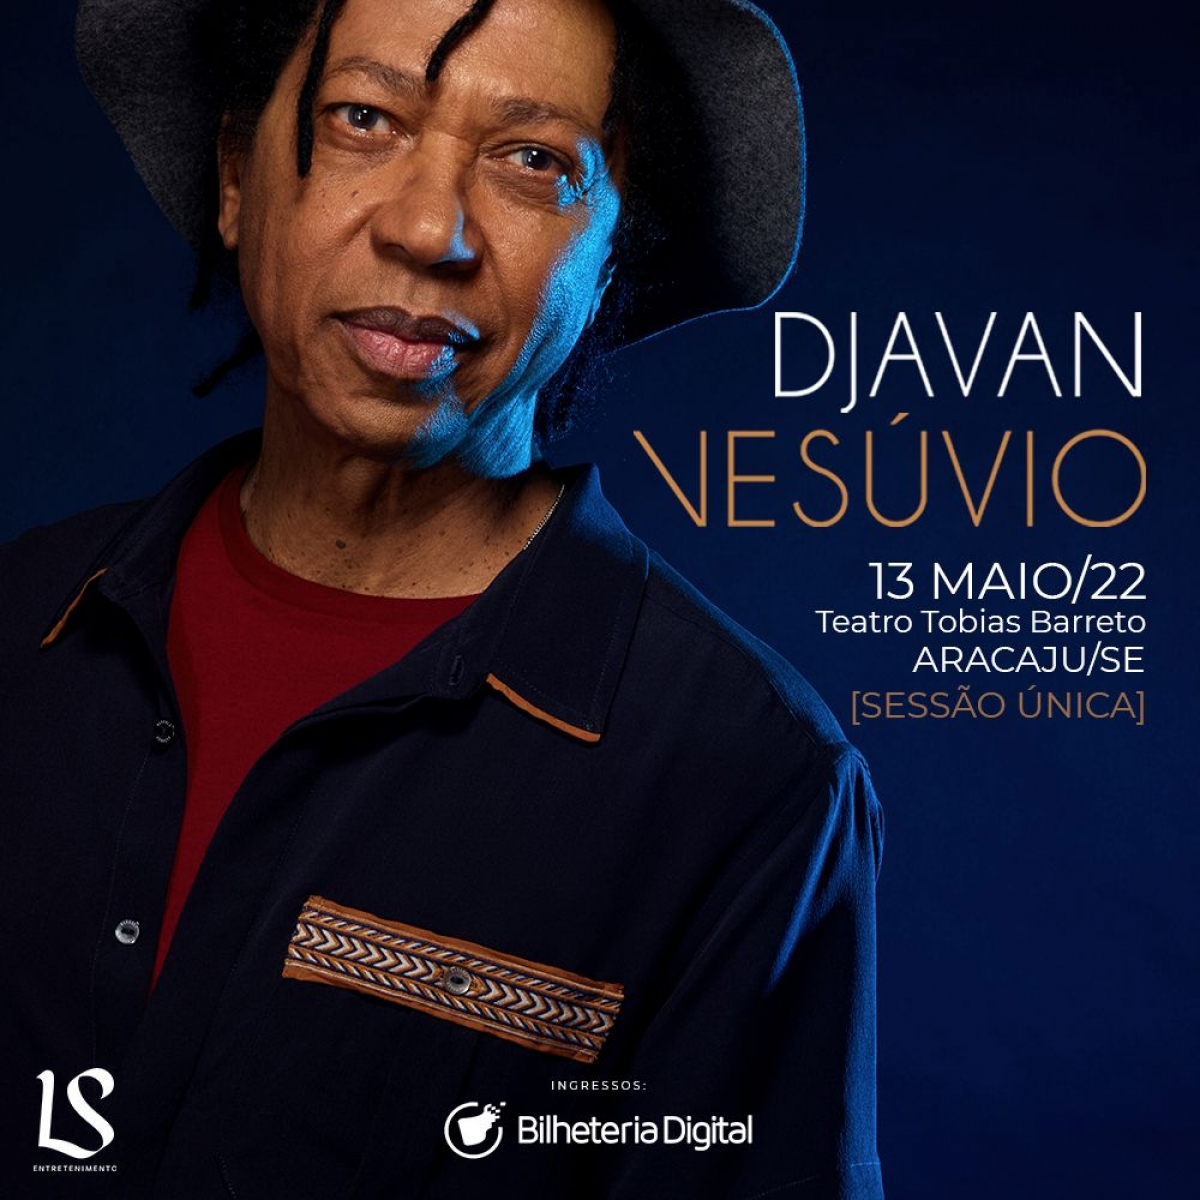 Após seis anos, Djavan volta a se apresentar em Aracaju com a turnê "Vesúvio" (Imagem: Divulgação)